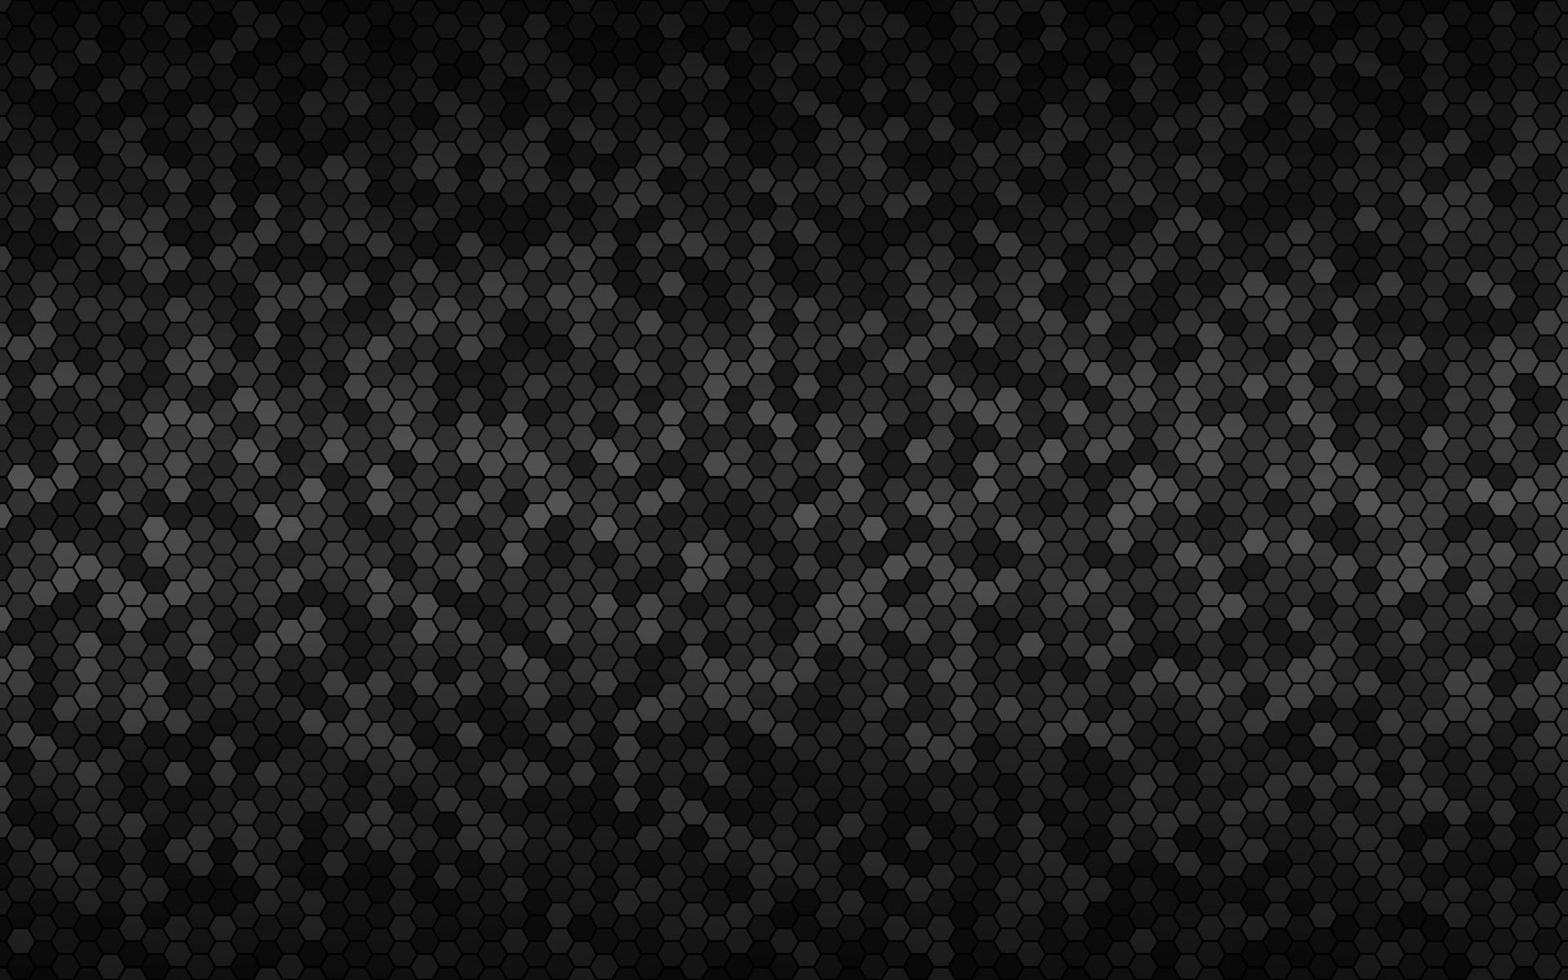 fondo geométrico oscuro moderno de alta resolución con cuadrícula poligonal. patrón hexagonal metálico negro abstracto. ilustración vectorial sencilla vector